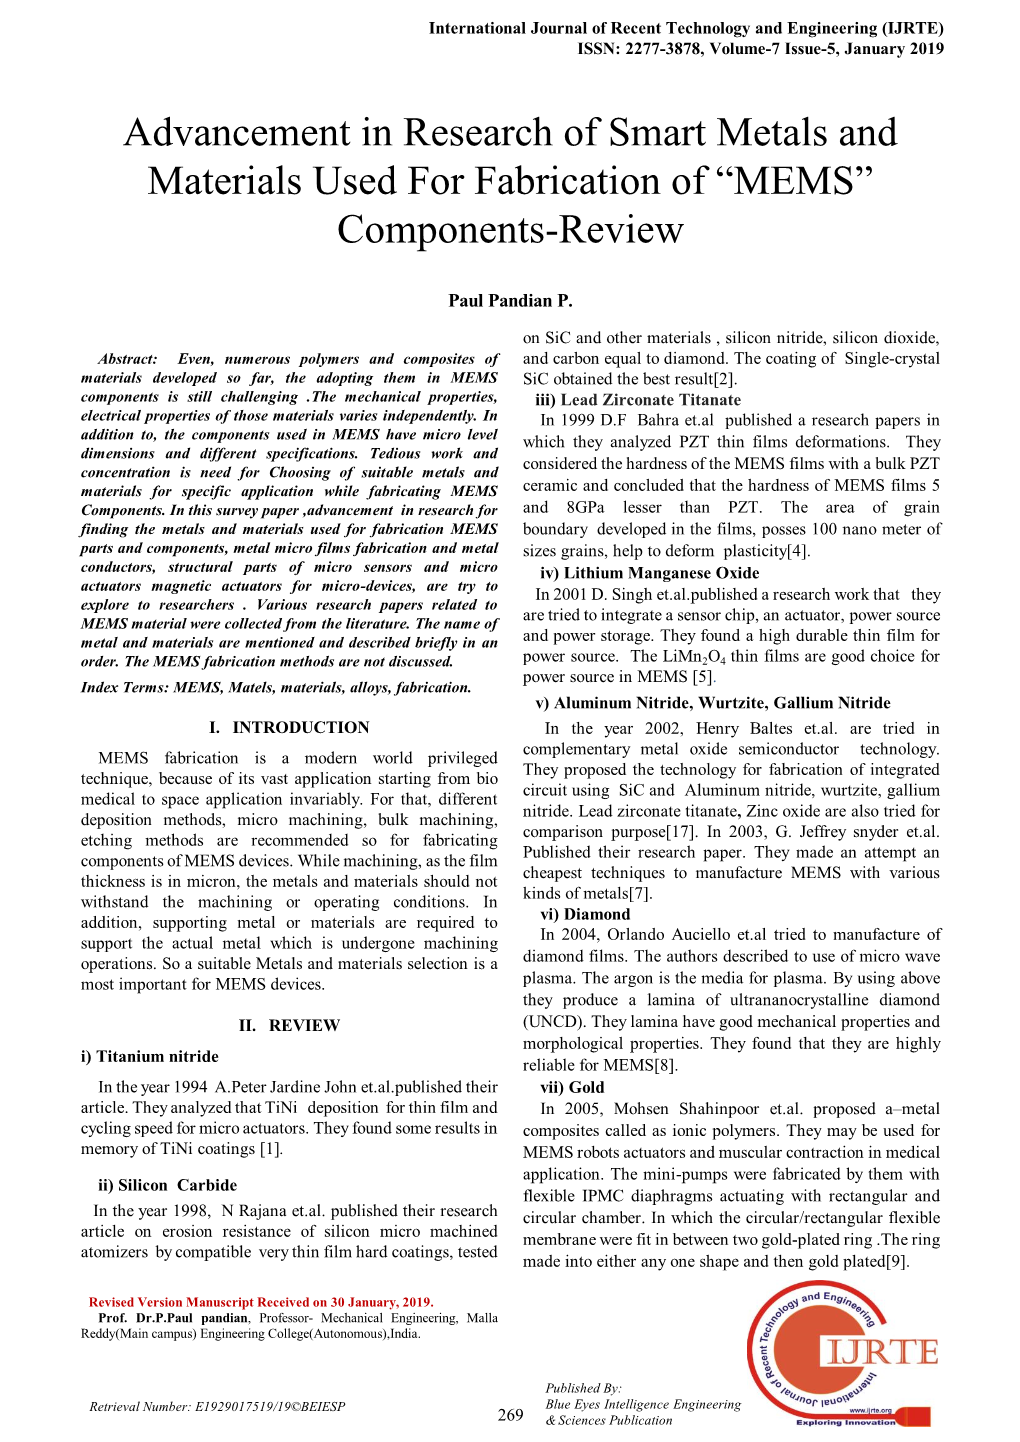 MEMS” Components-Review